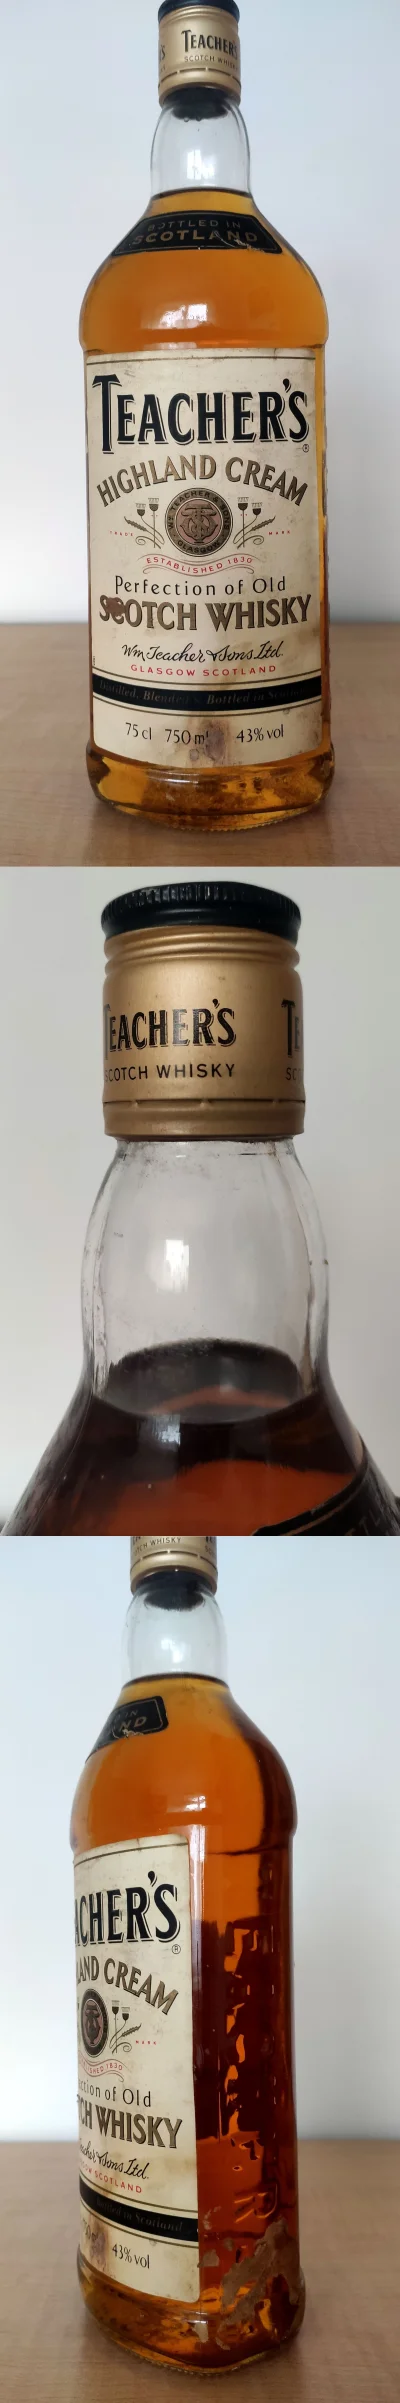 tomilipin - Teacher's Highland Cream - butelka druga

Butelka o pojemności 750 ml, ...